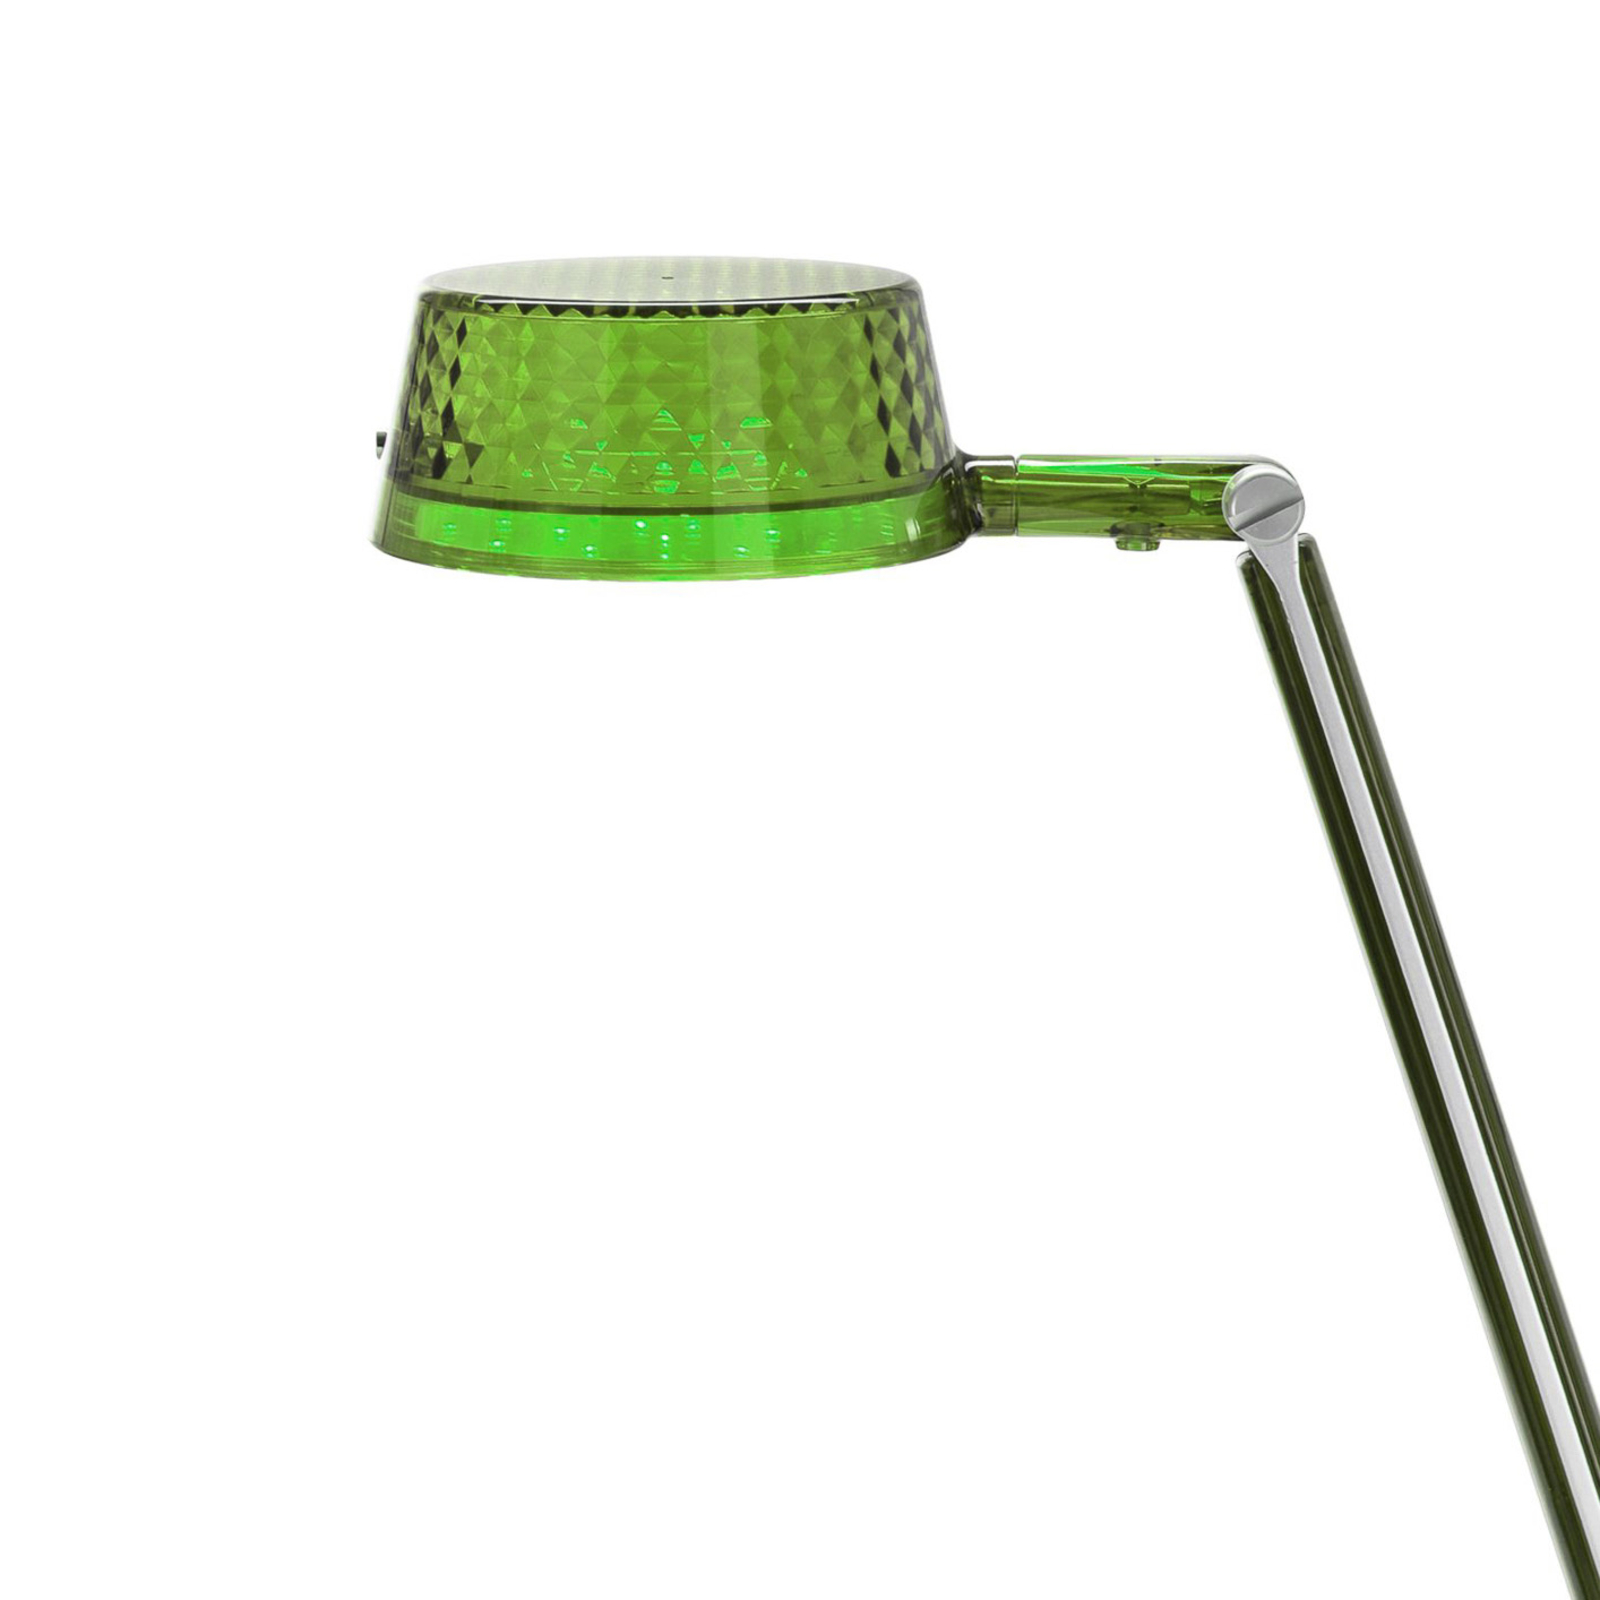 Kartell Aledin Dec – stolná LED lampa, zelená